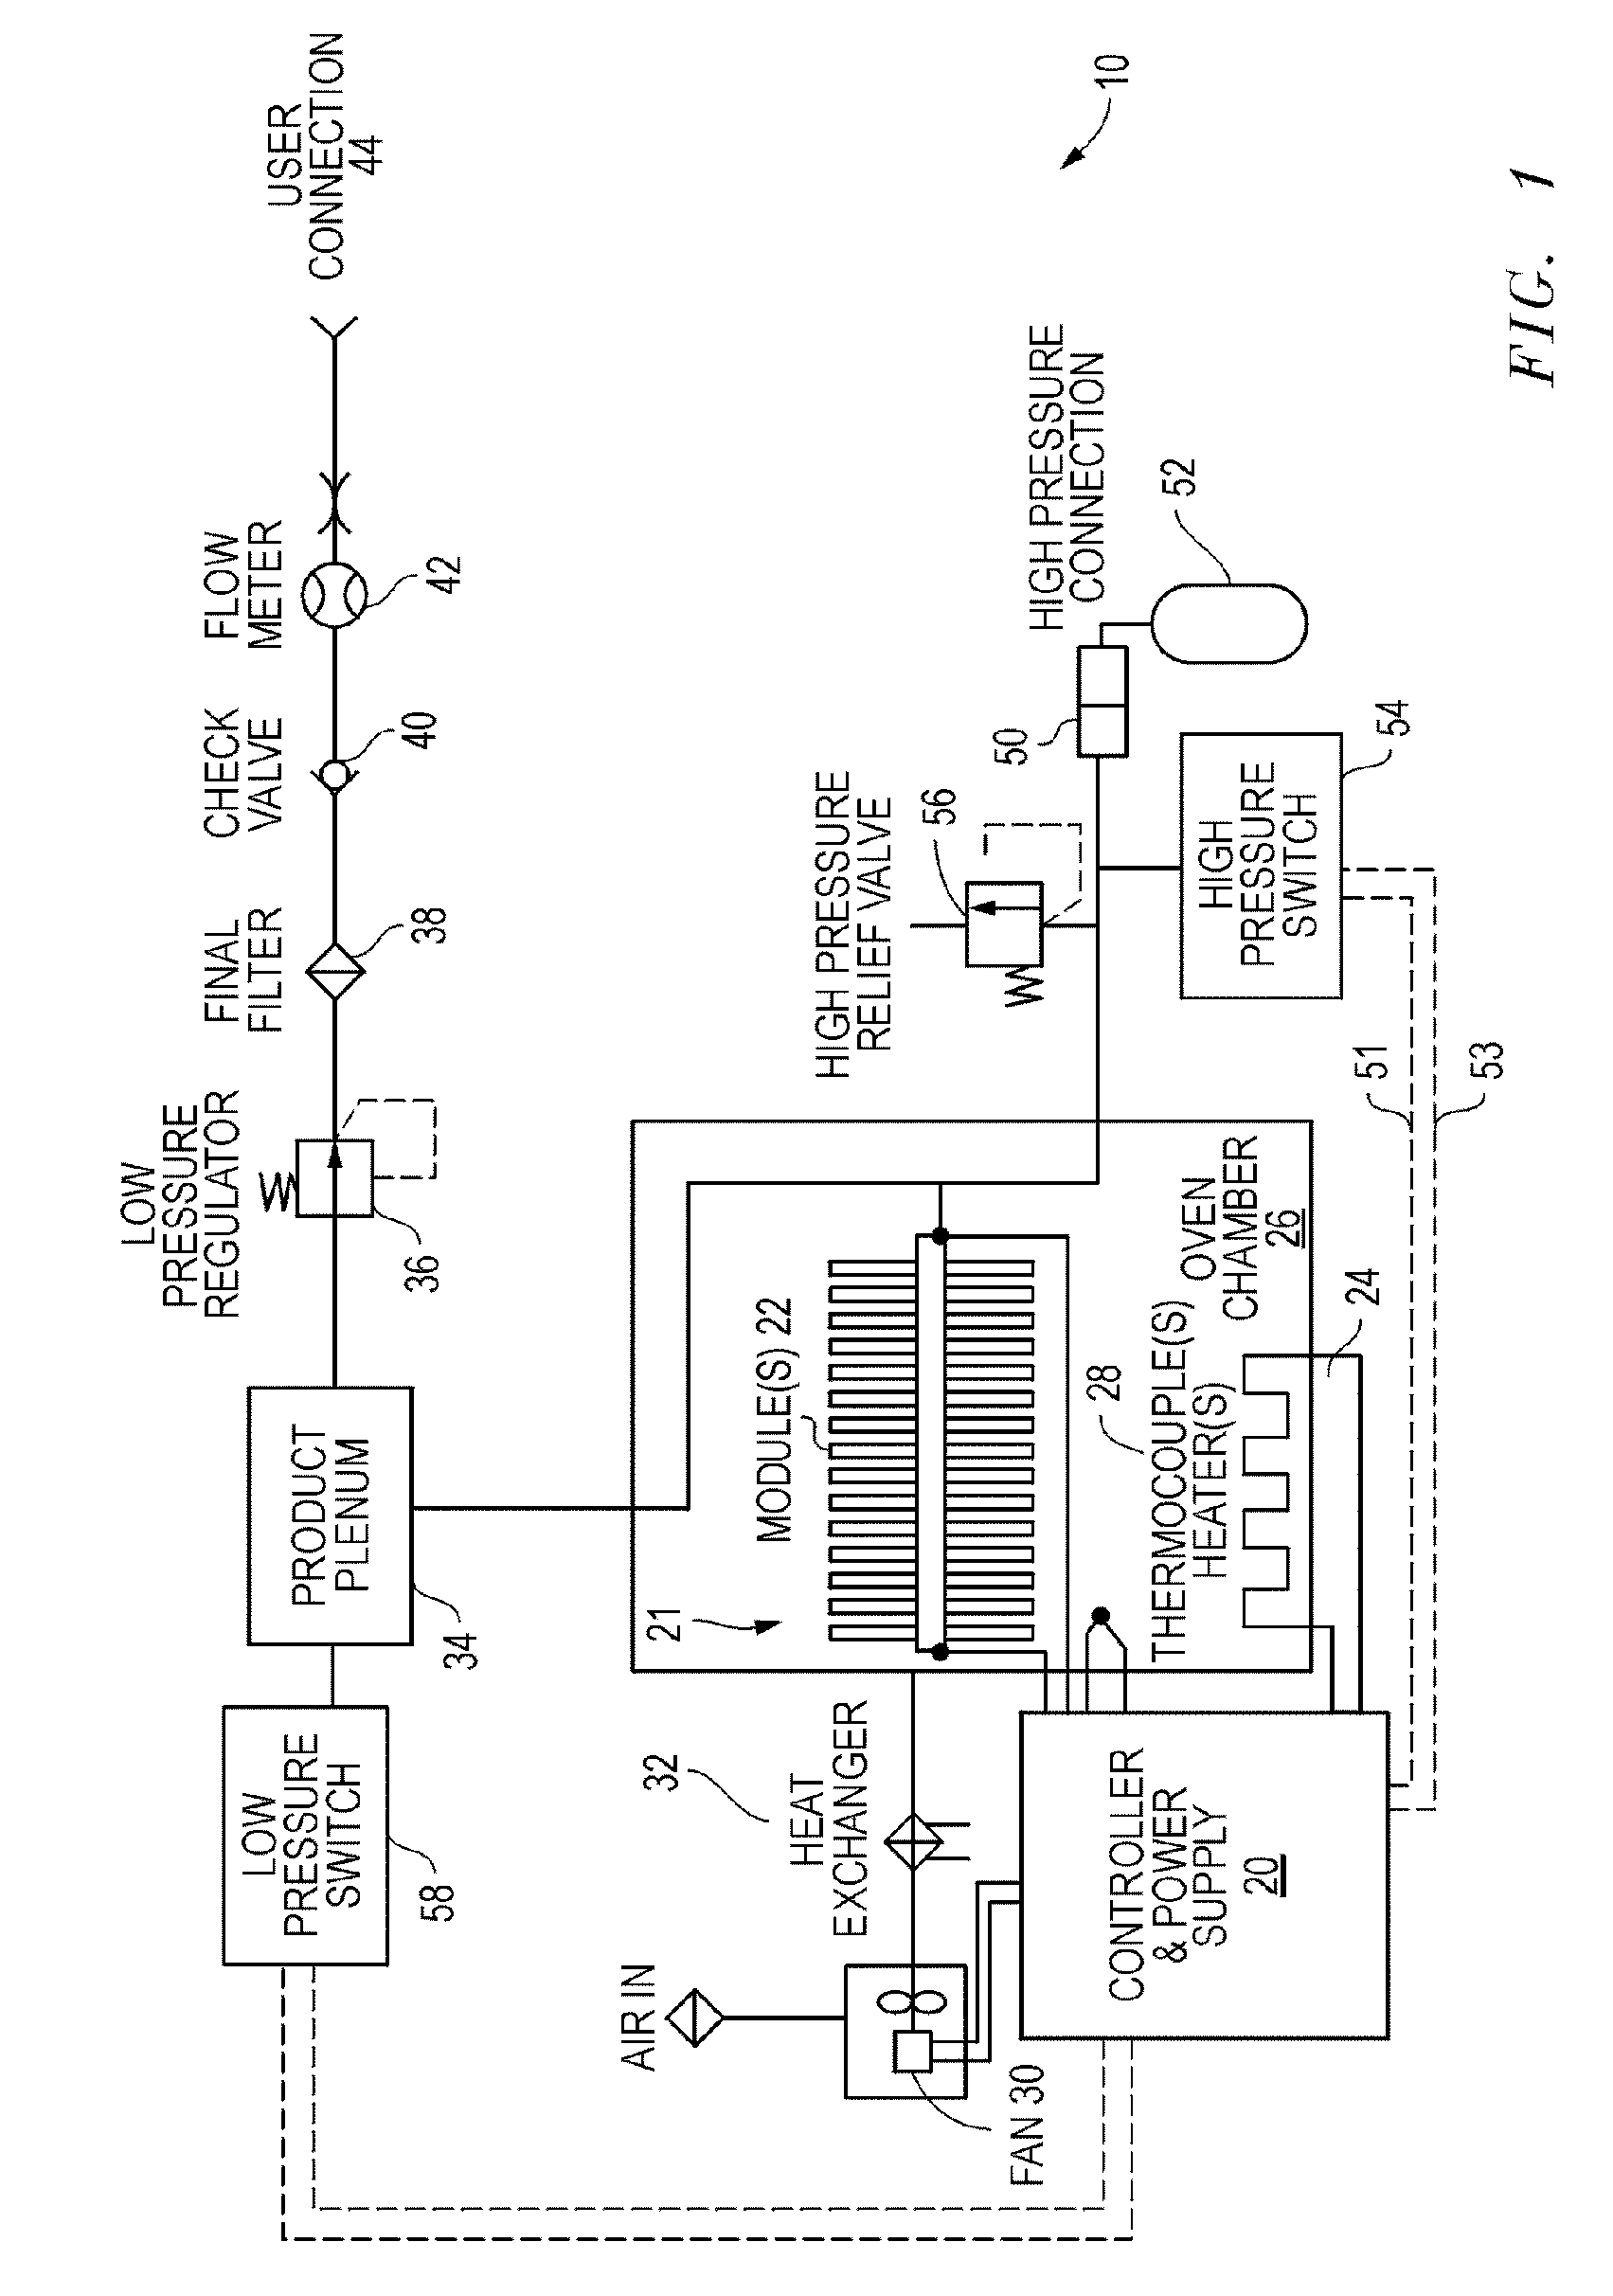 Electrochemical oxygen generator module assembly